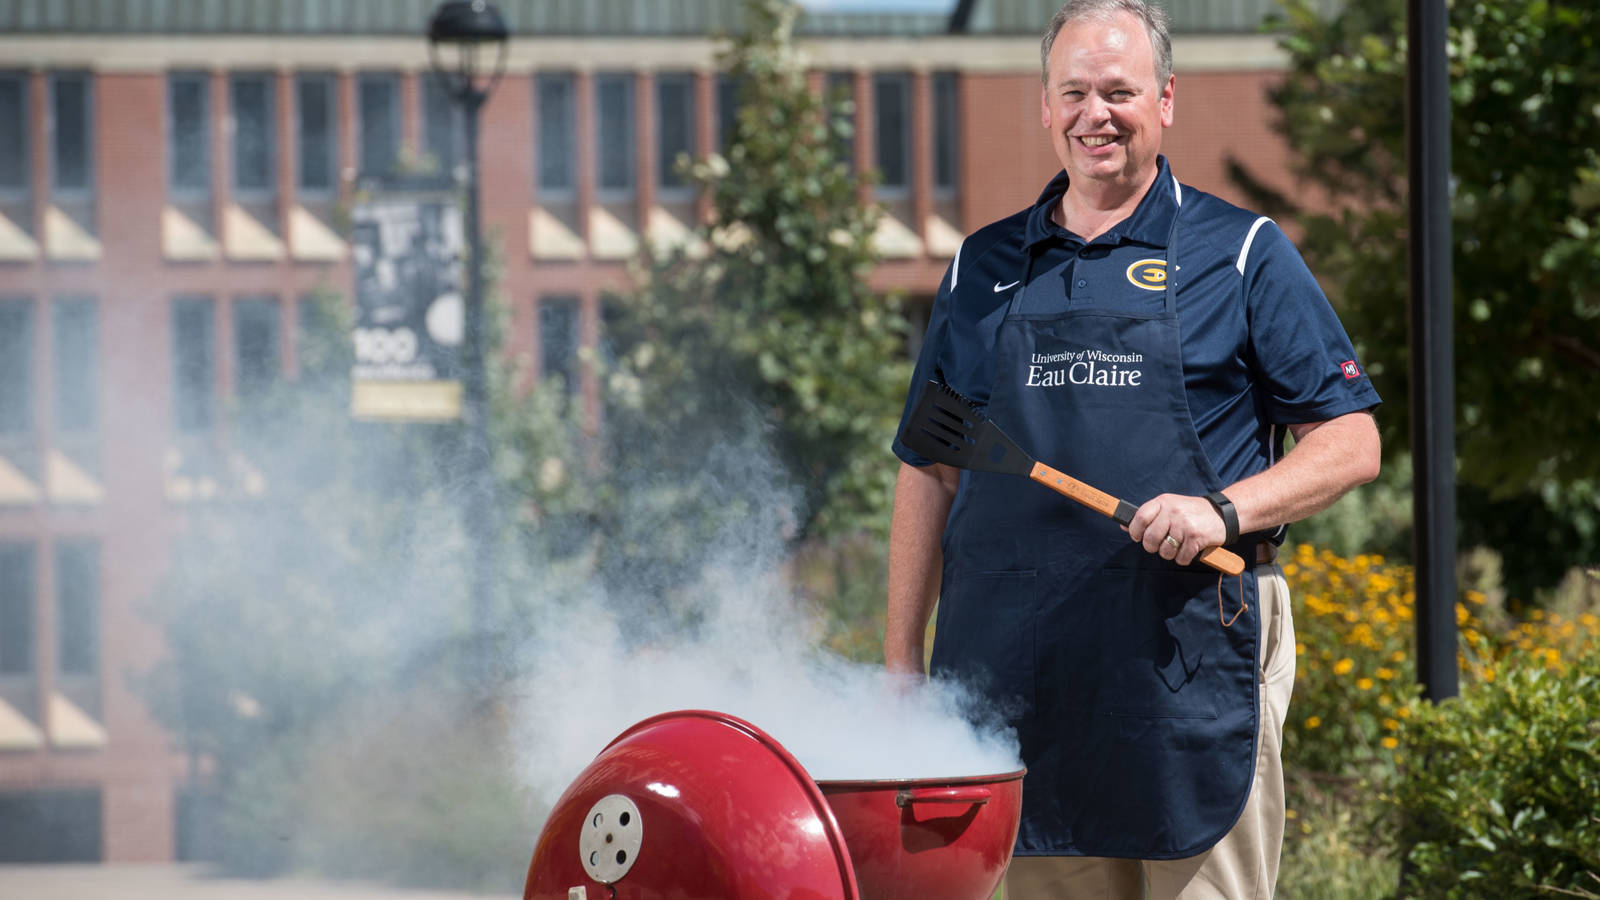 Chancellor Jim Schmidt grilling on campus, August 2018.